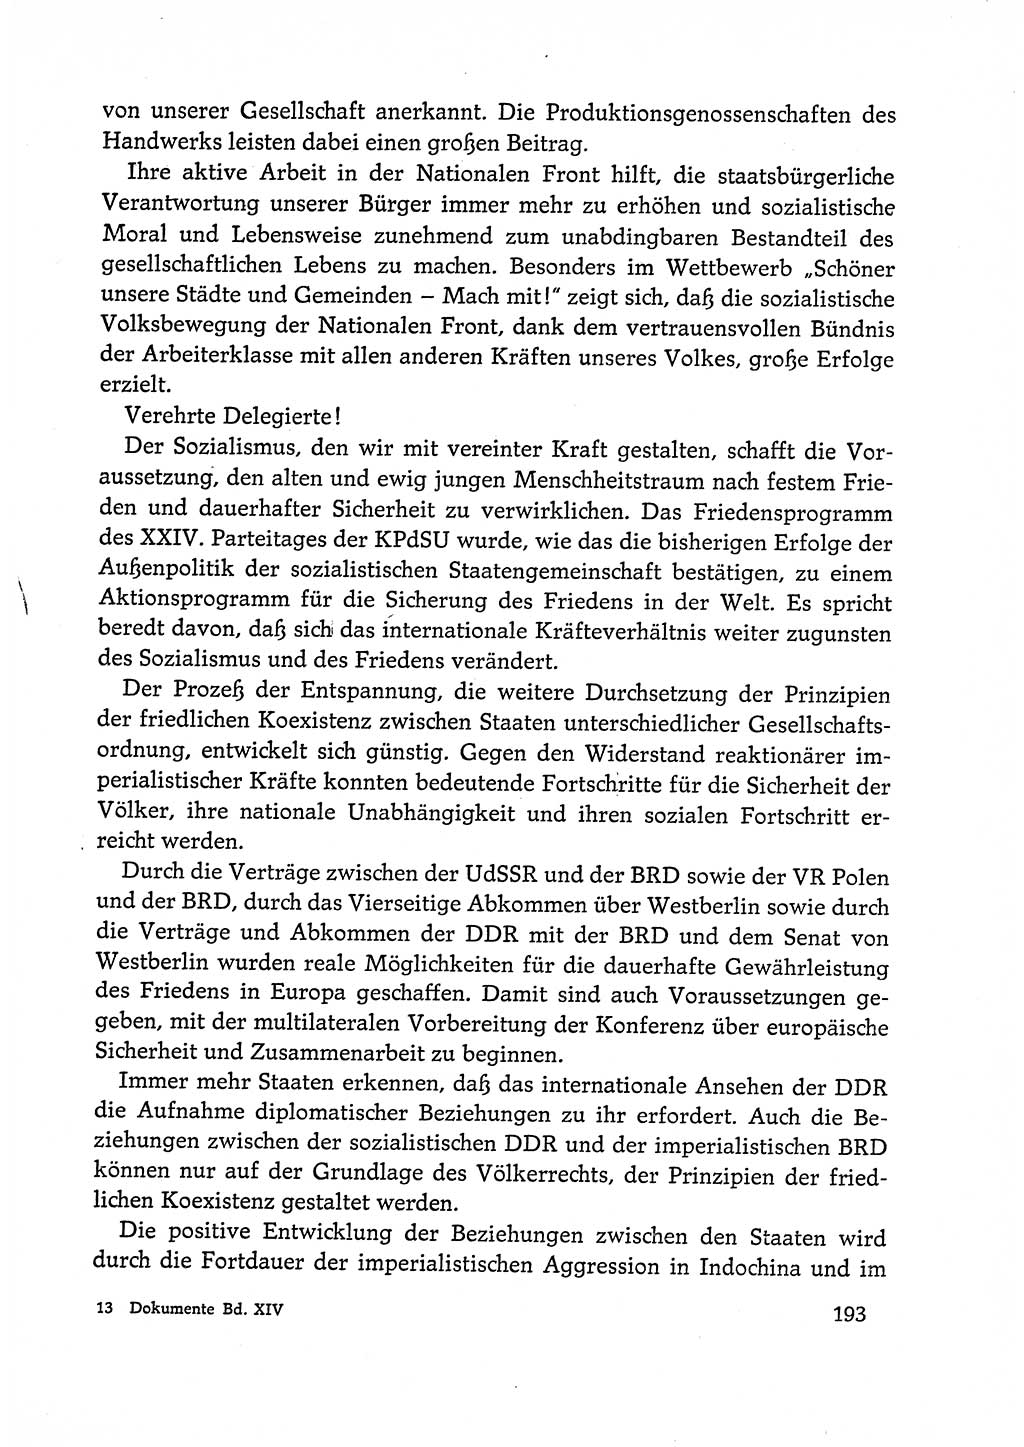 Dokumente der Sozialistischen Einheitspartei Deutschlands (SED) [Deutsche Demokratische Republik (DDR)] 1972-1973, Seite 193 (Dok. SED DDR 1972-1973, S. 193)